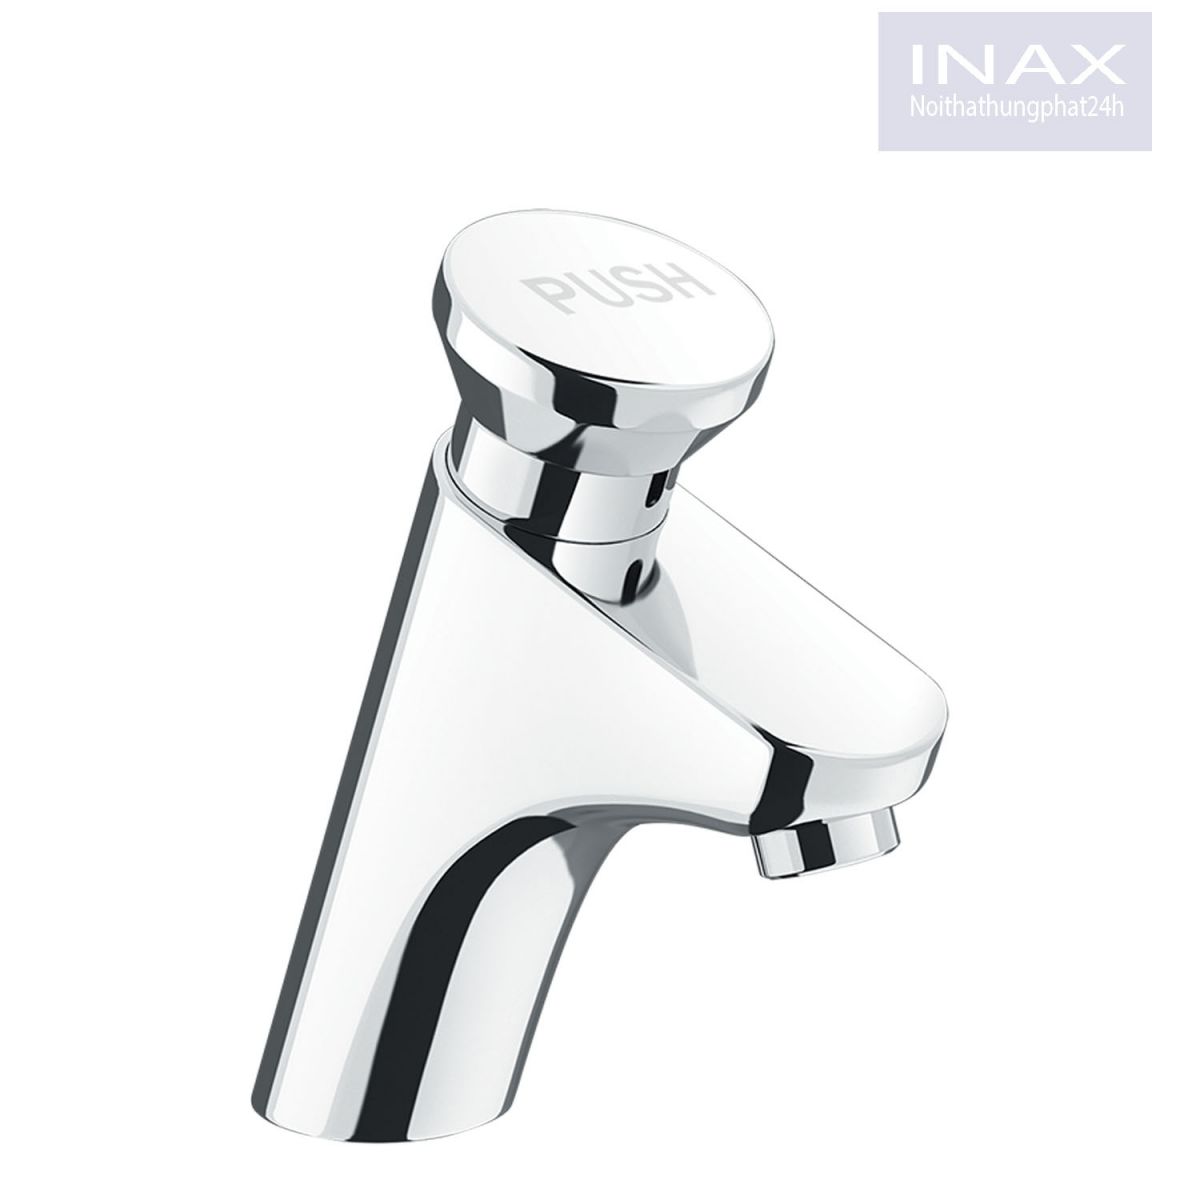 Mẫu vòi rửa mặt Inax ngắt nước tự động chính hãng tiết kiệm nước